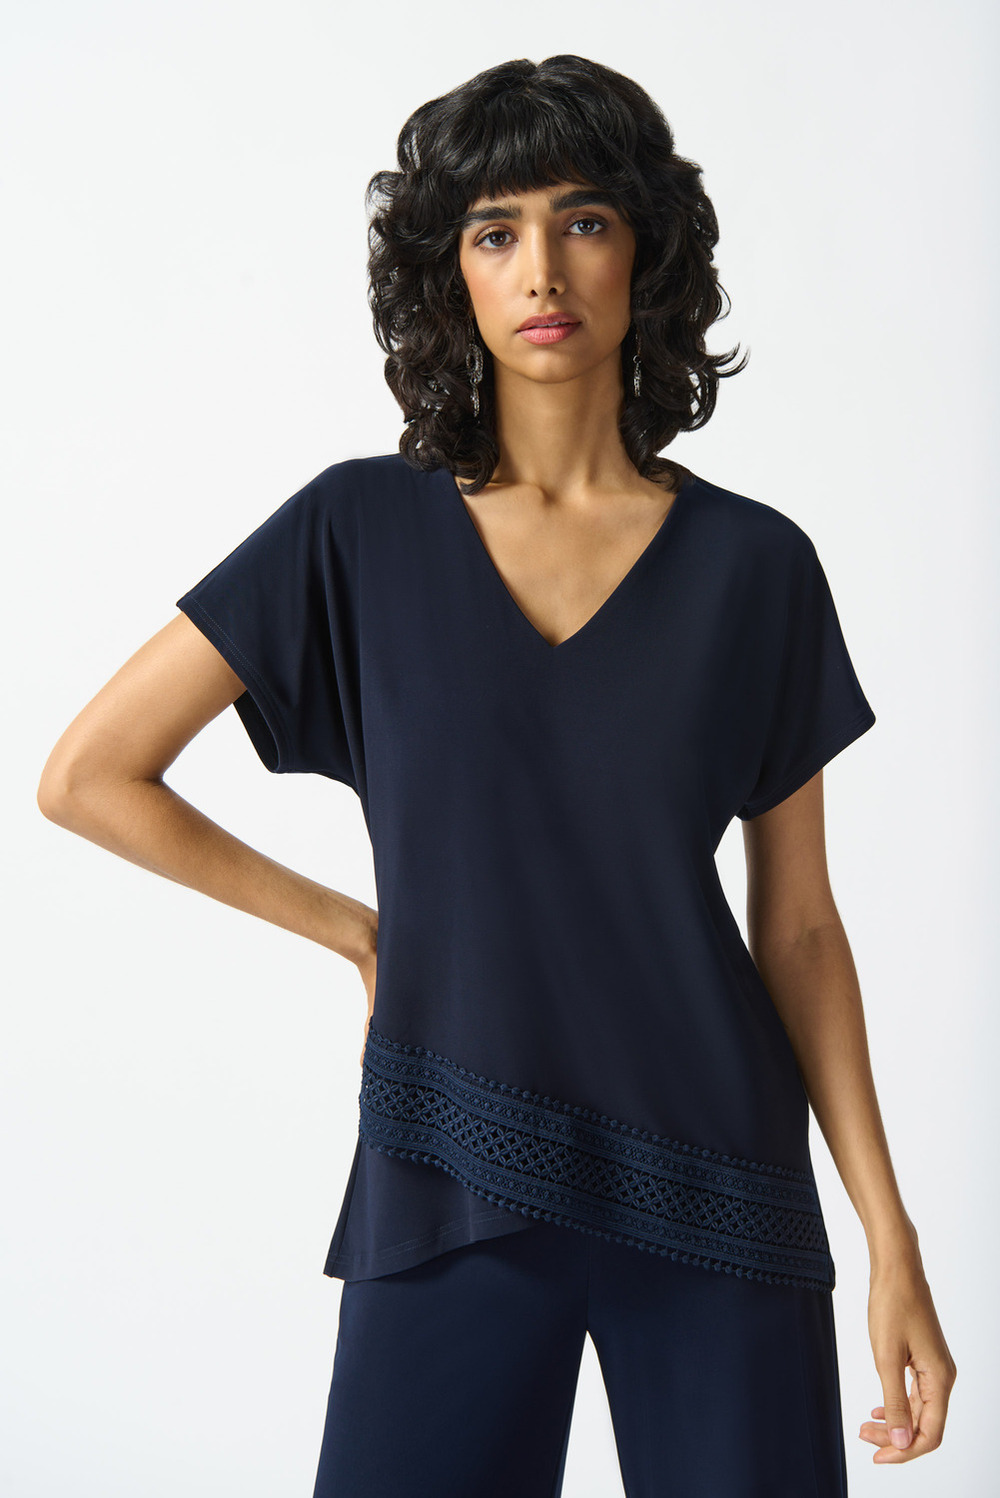 T-shirt asymétrique, dentelle brodée modèle 242132. Bleu Nuit